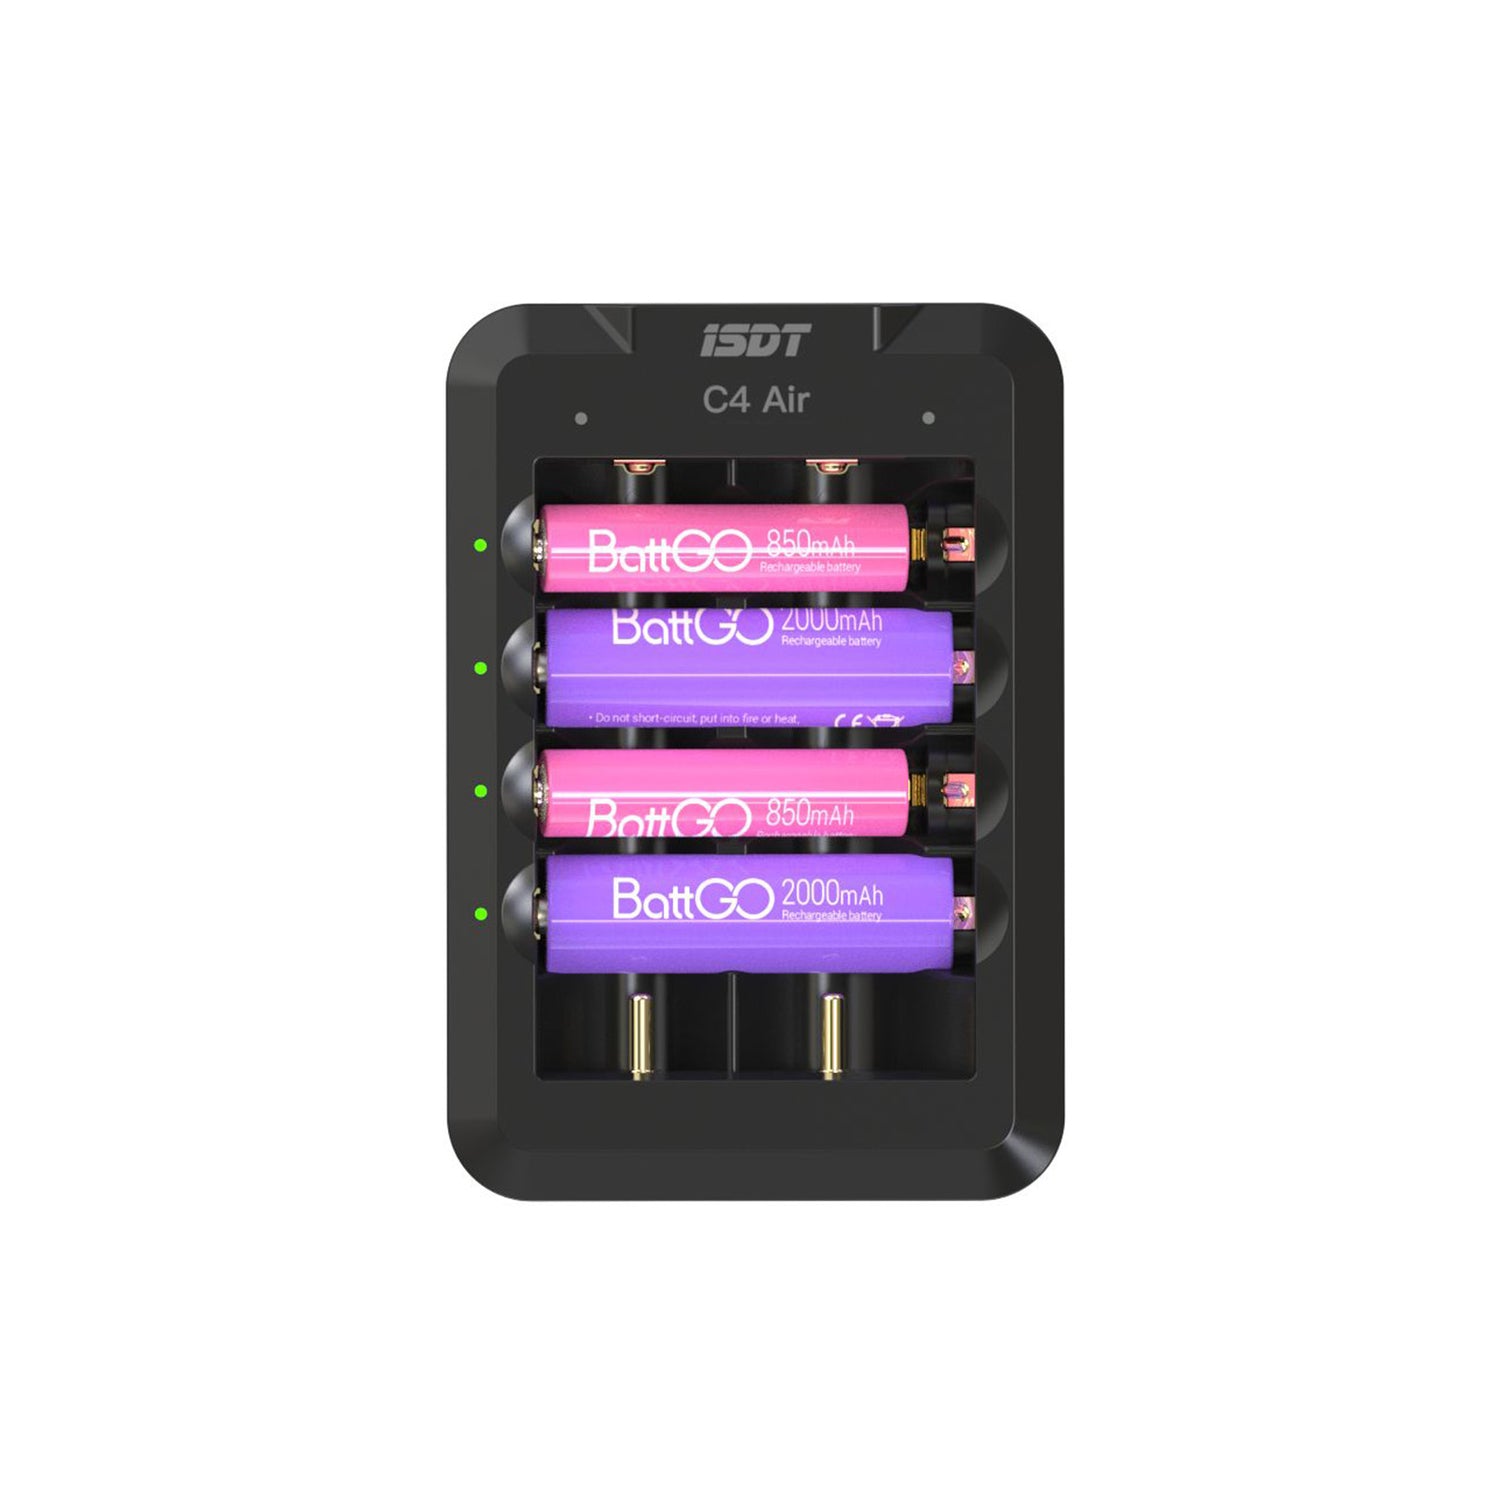 C4 carregador de bateria rápida, 6 slots USB C carregador de bateria doméstica com a função de conexão do aplicativo Bluetooth